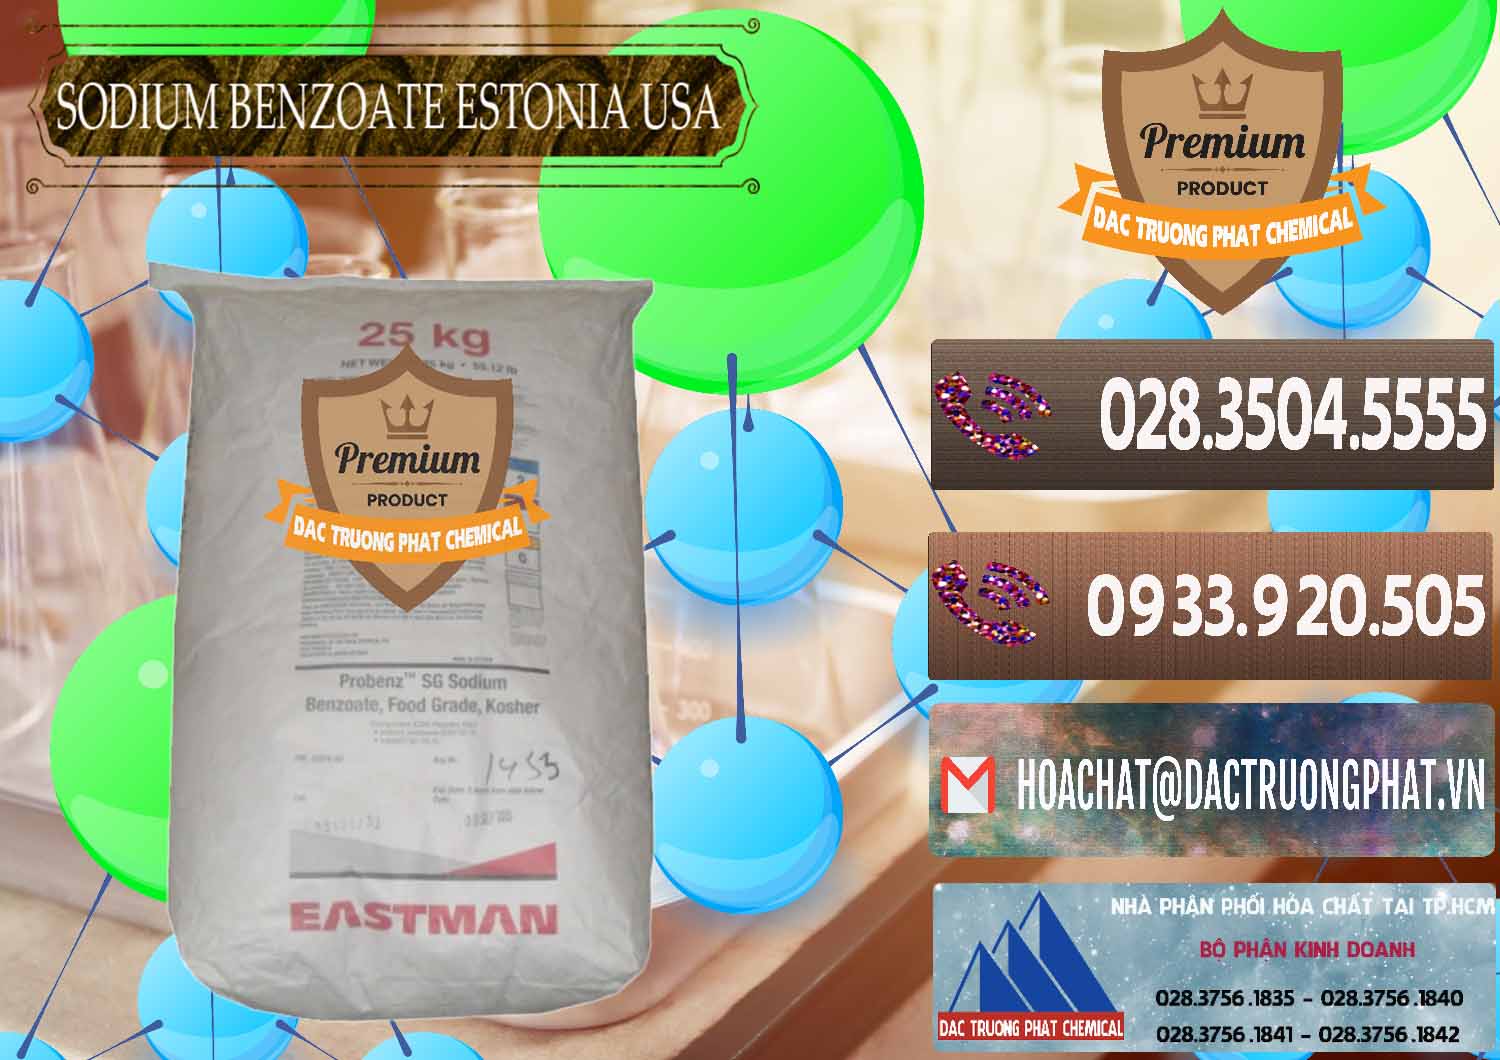 Công ty chuyên kinh doanh _ bán Sodium Benzoate - Mốc Bột Estonia Mỹ USA - 0468 - Công ty chuyên cung cấp và nhập khẩu hóa chất tại TP.HCM - hoachatviet.net